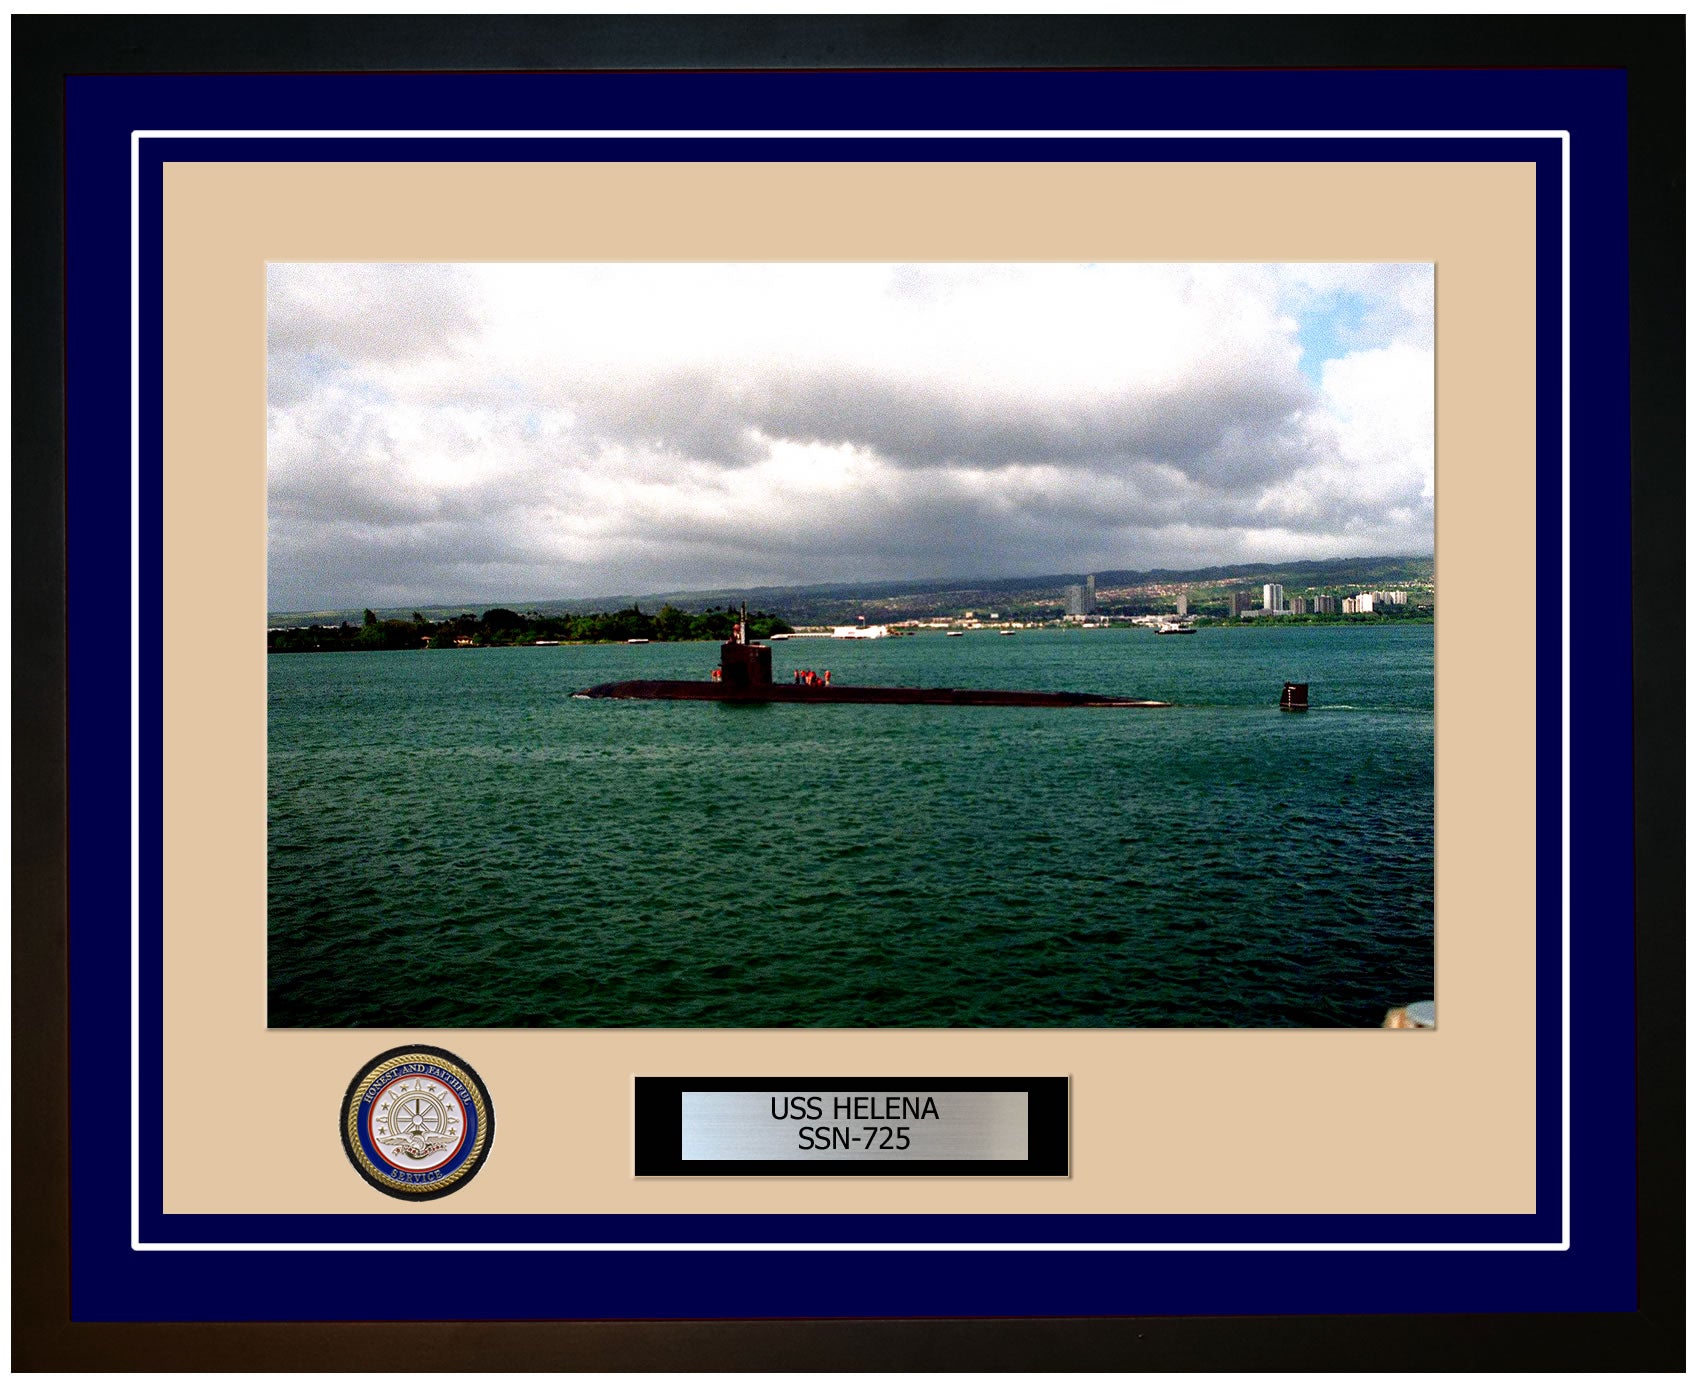 USS Helena SSN-725 Framed Navy Ship Photo Blue